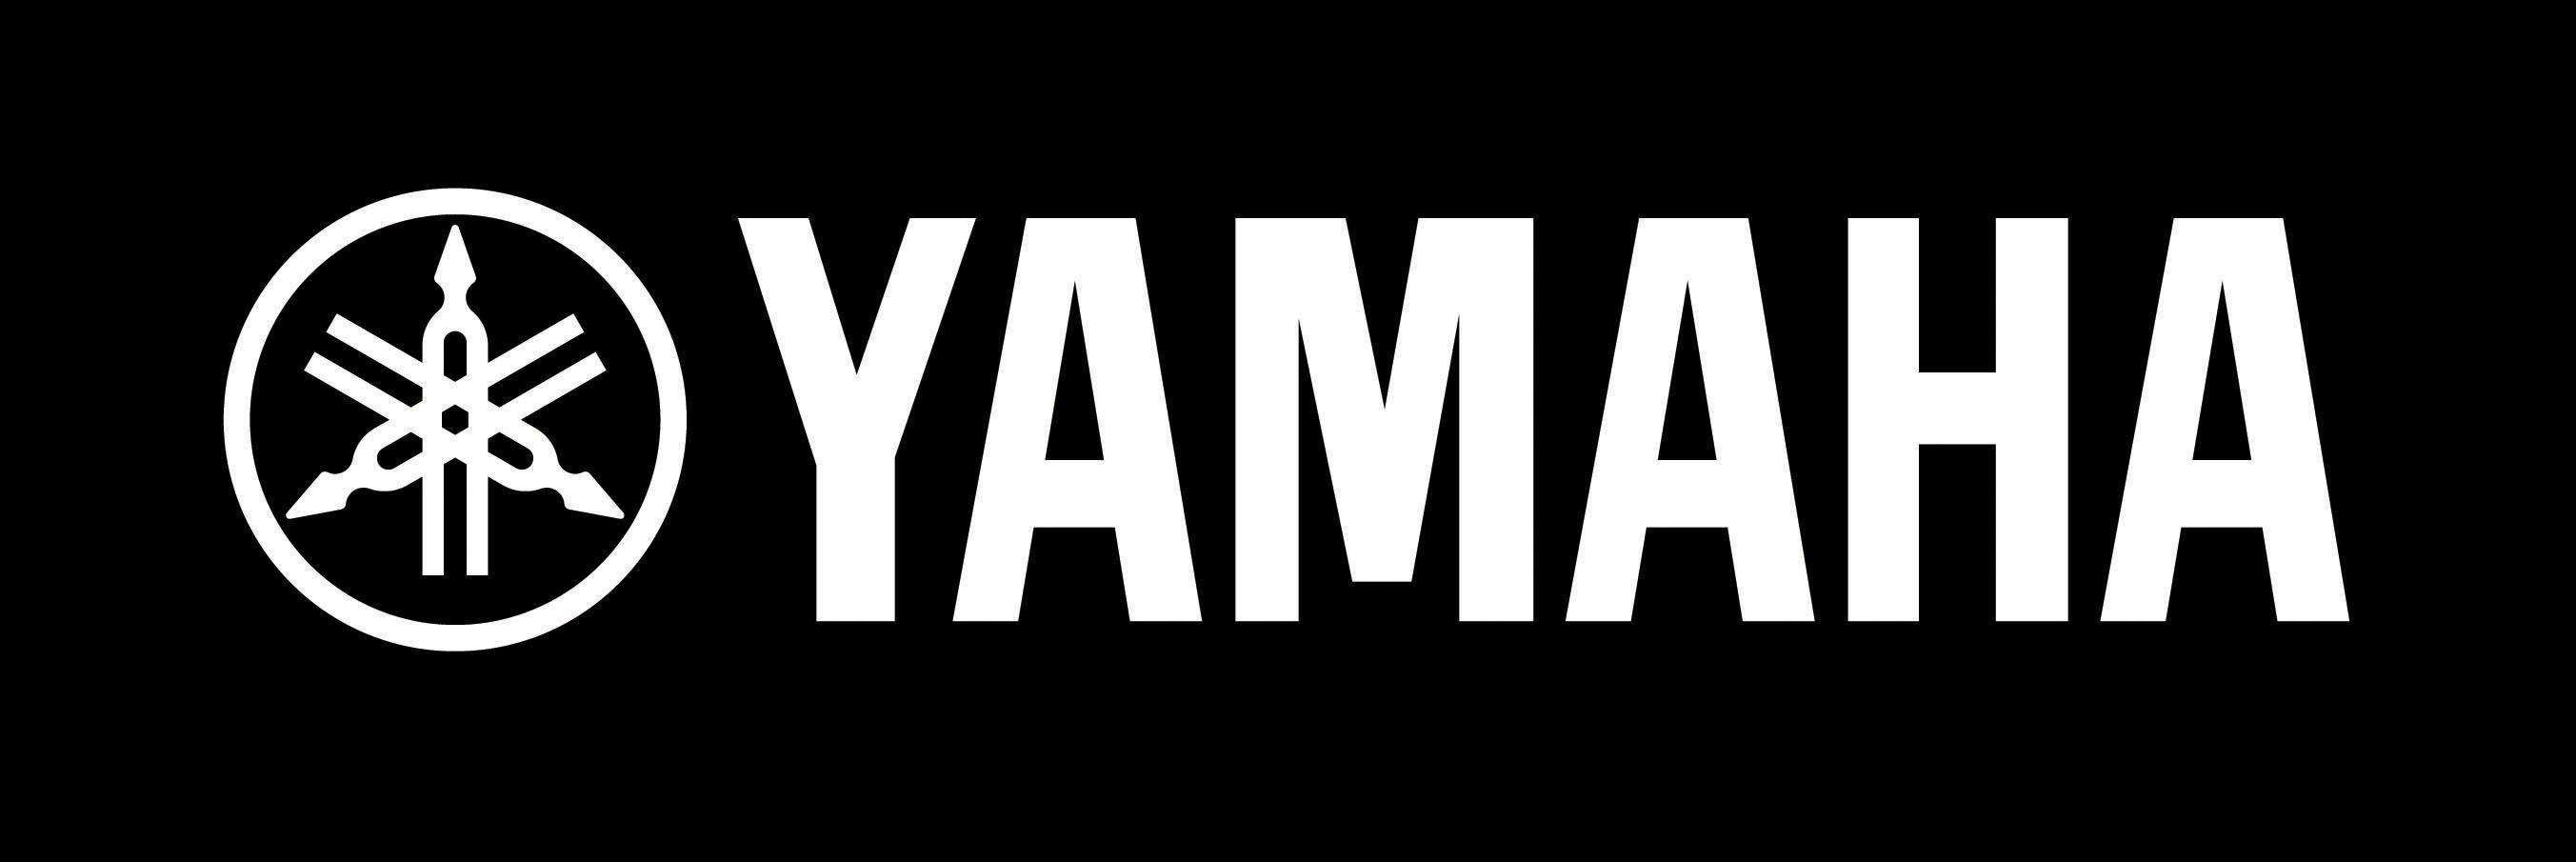 Yamaha White Logo - YAMAHA logo